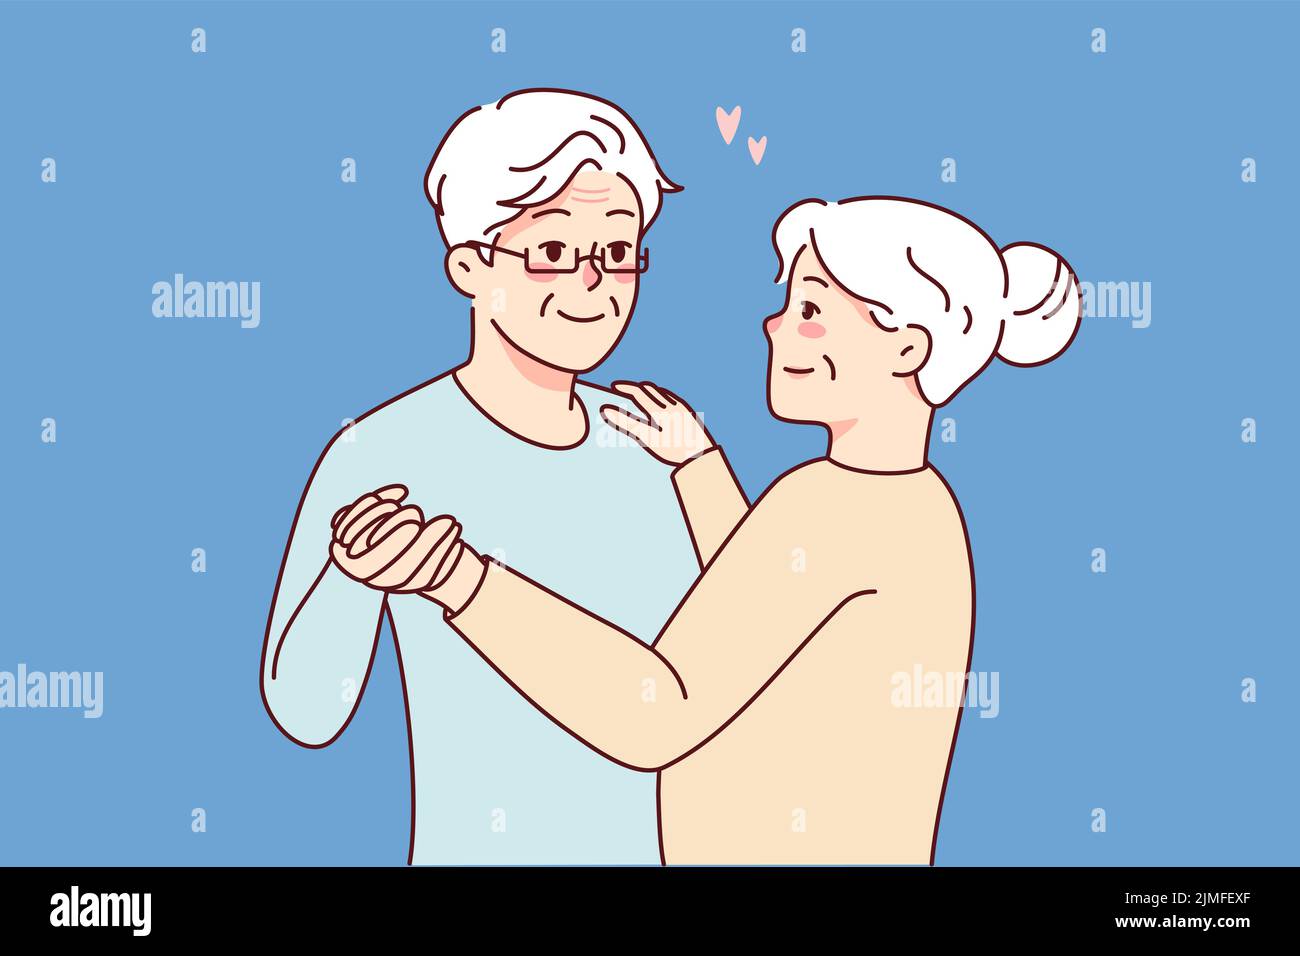 Glückliches älteres Paar, das zusammen tanzt. Lächelnder reifer Mann und Frau genießen Romantik und freudige Ruhe im Ruhestand. Liebe und Beziehungen. Vektorgrafik. Stock Vektor